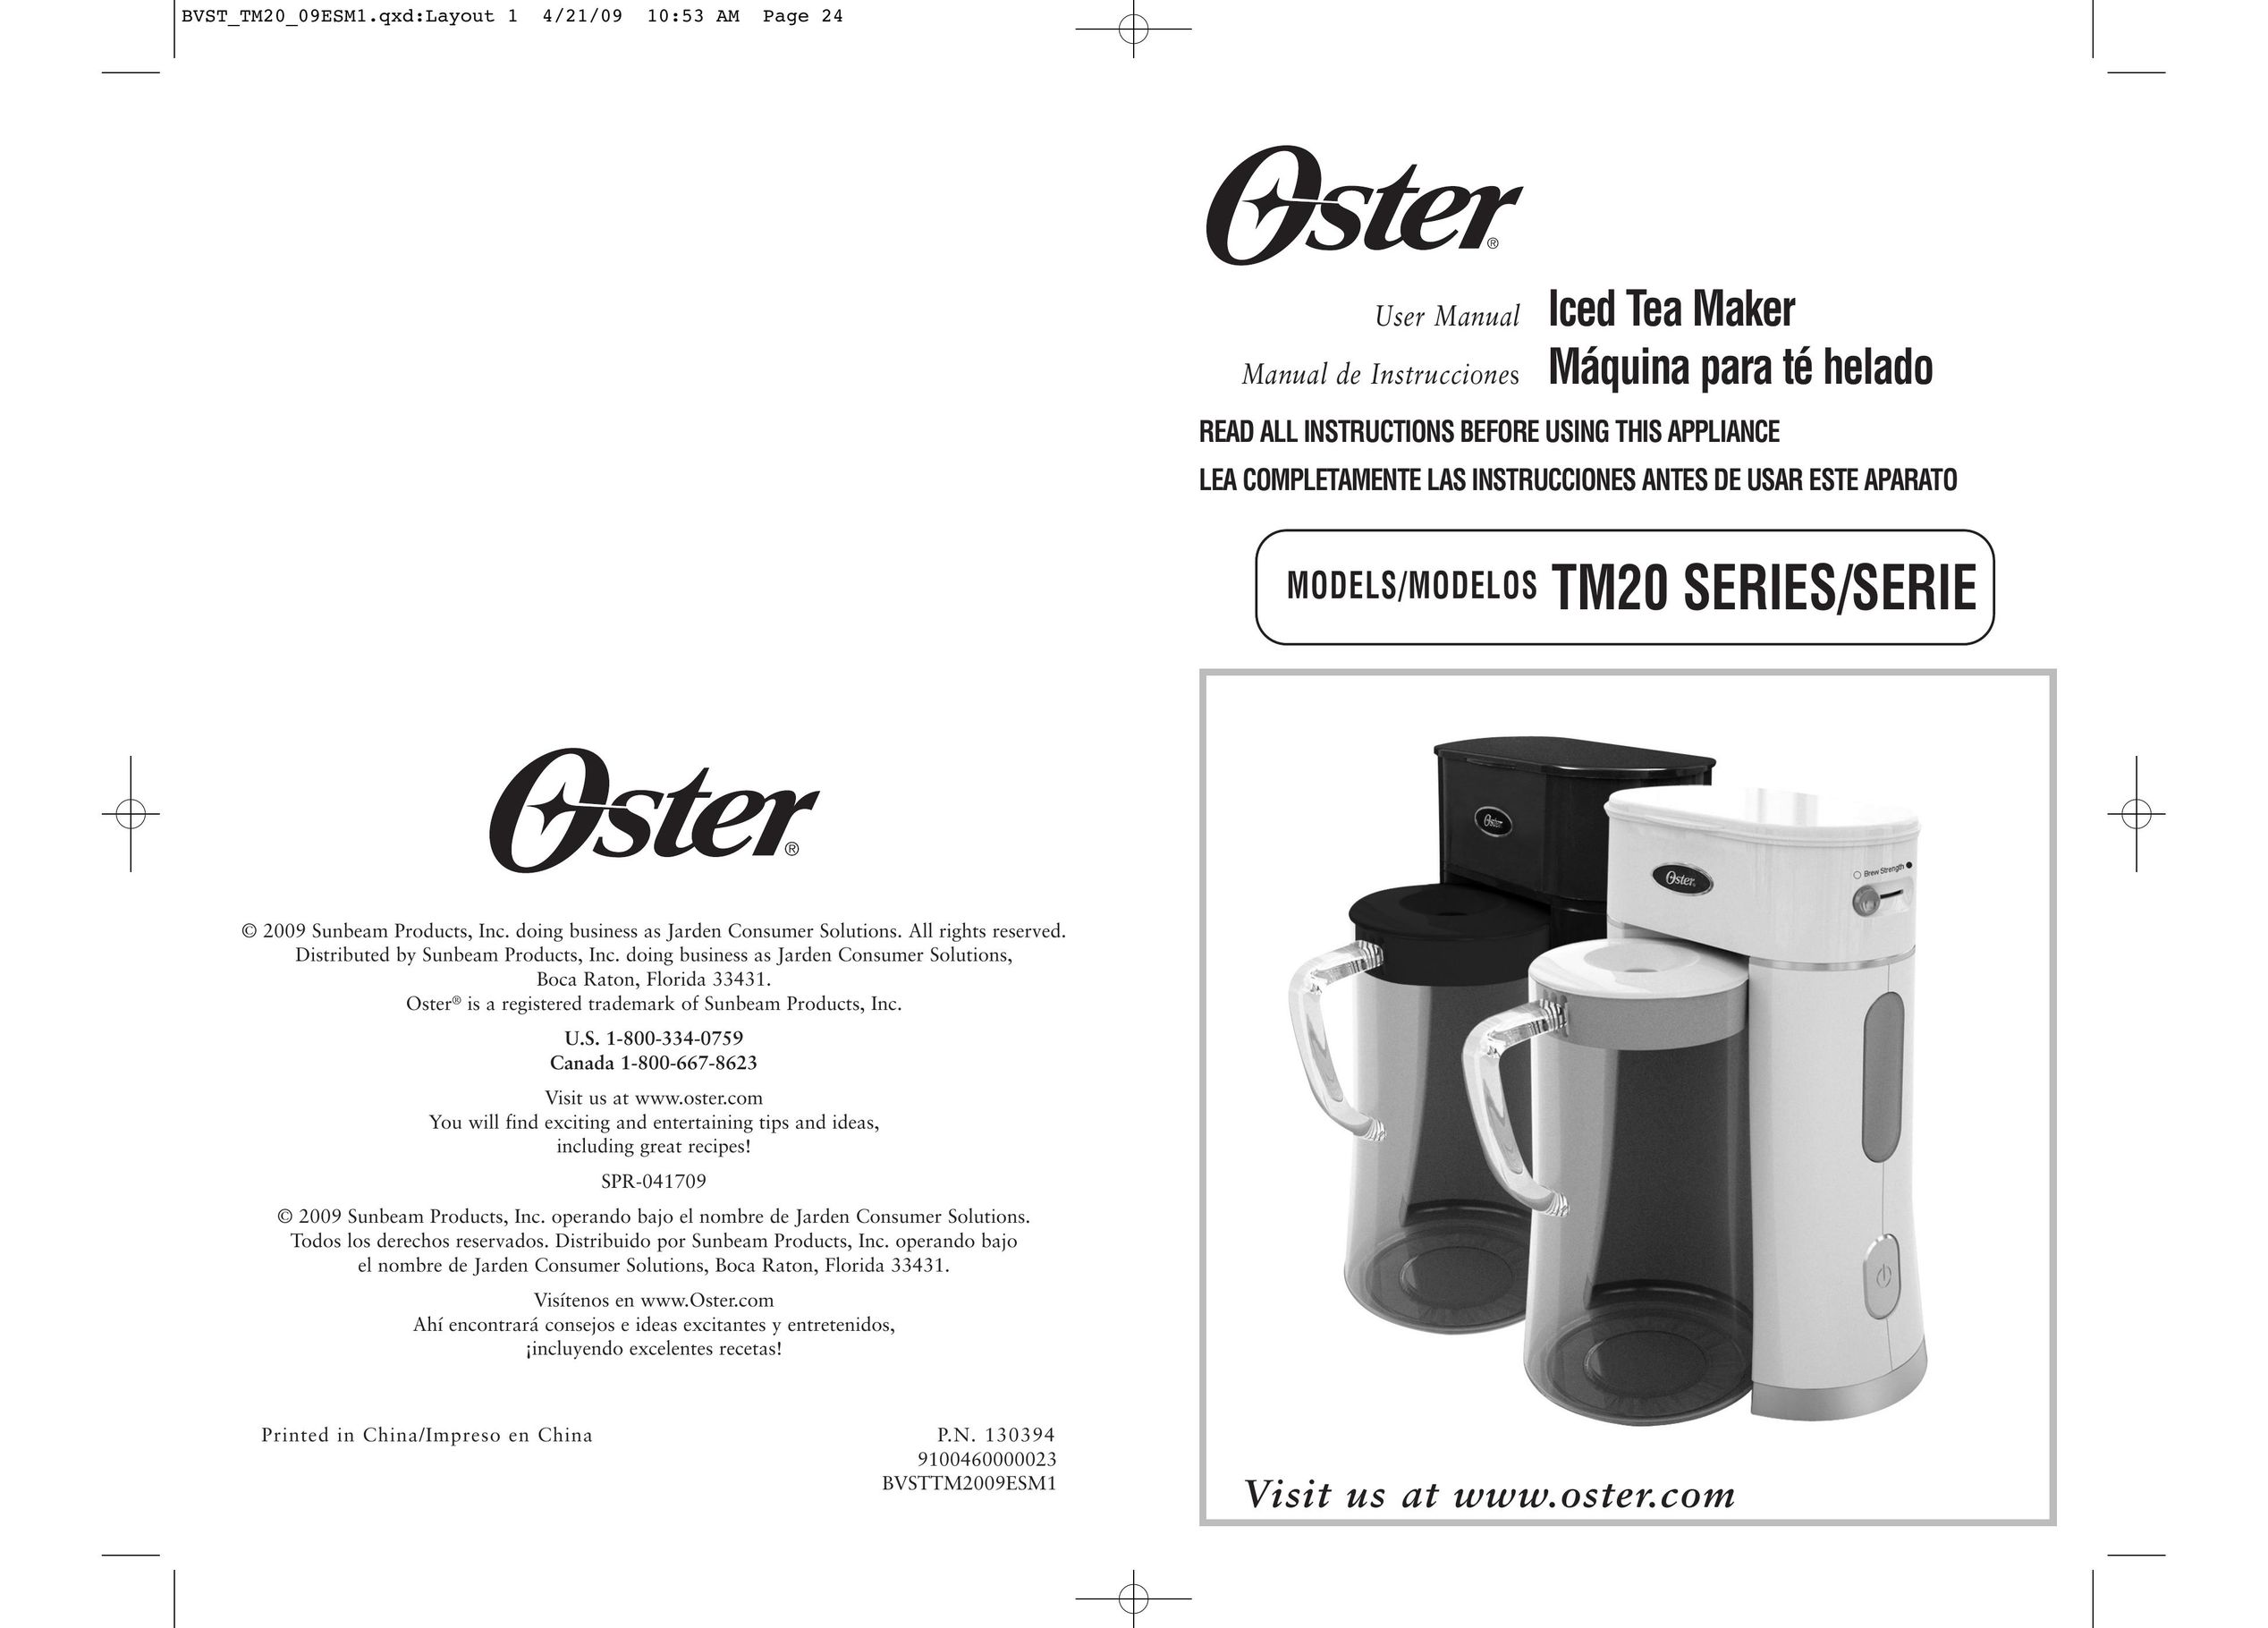 Oster BVST-TM23 Ice Tea Maker User Manual